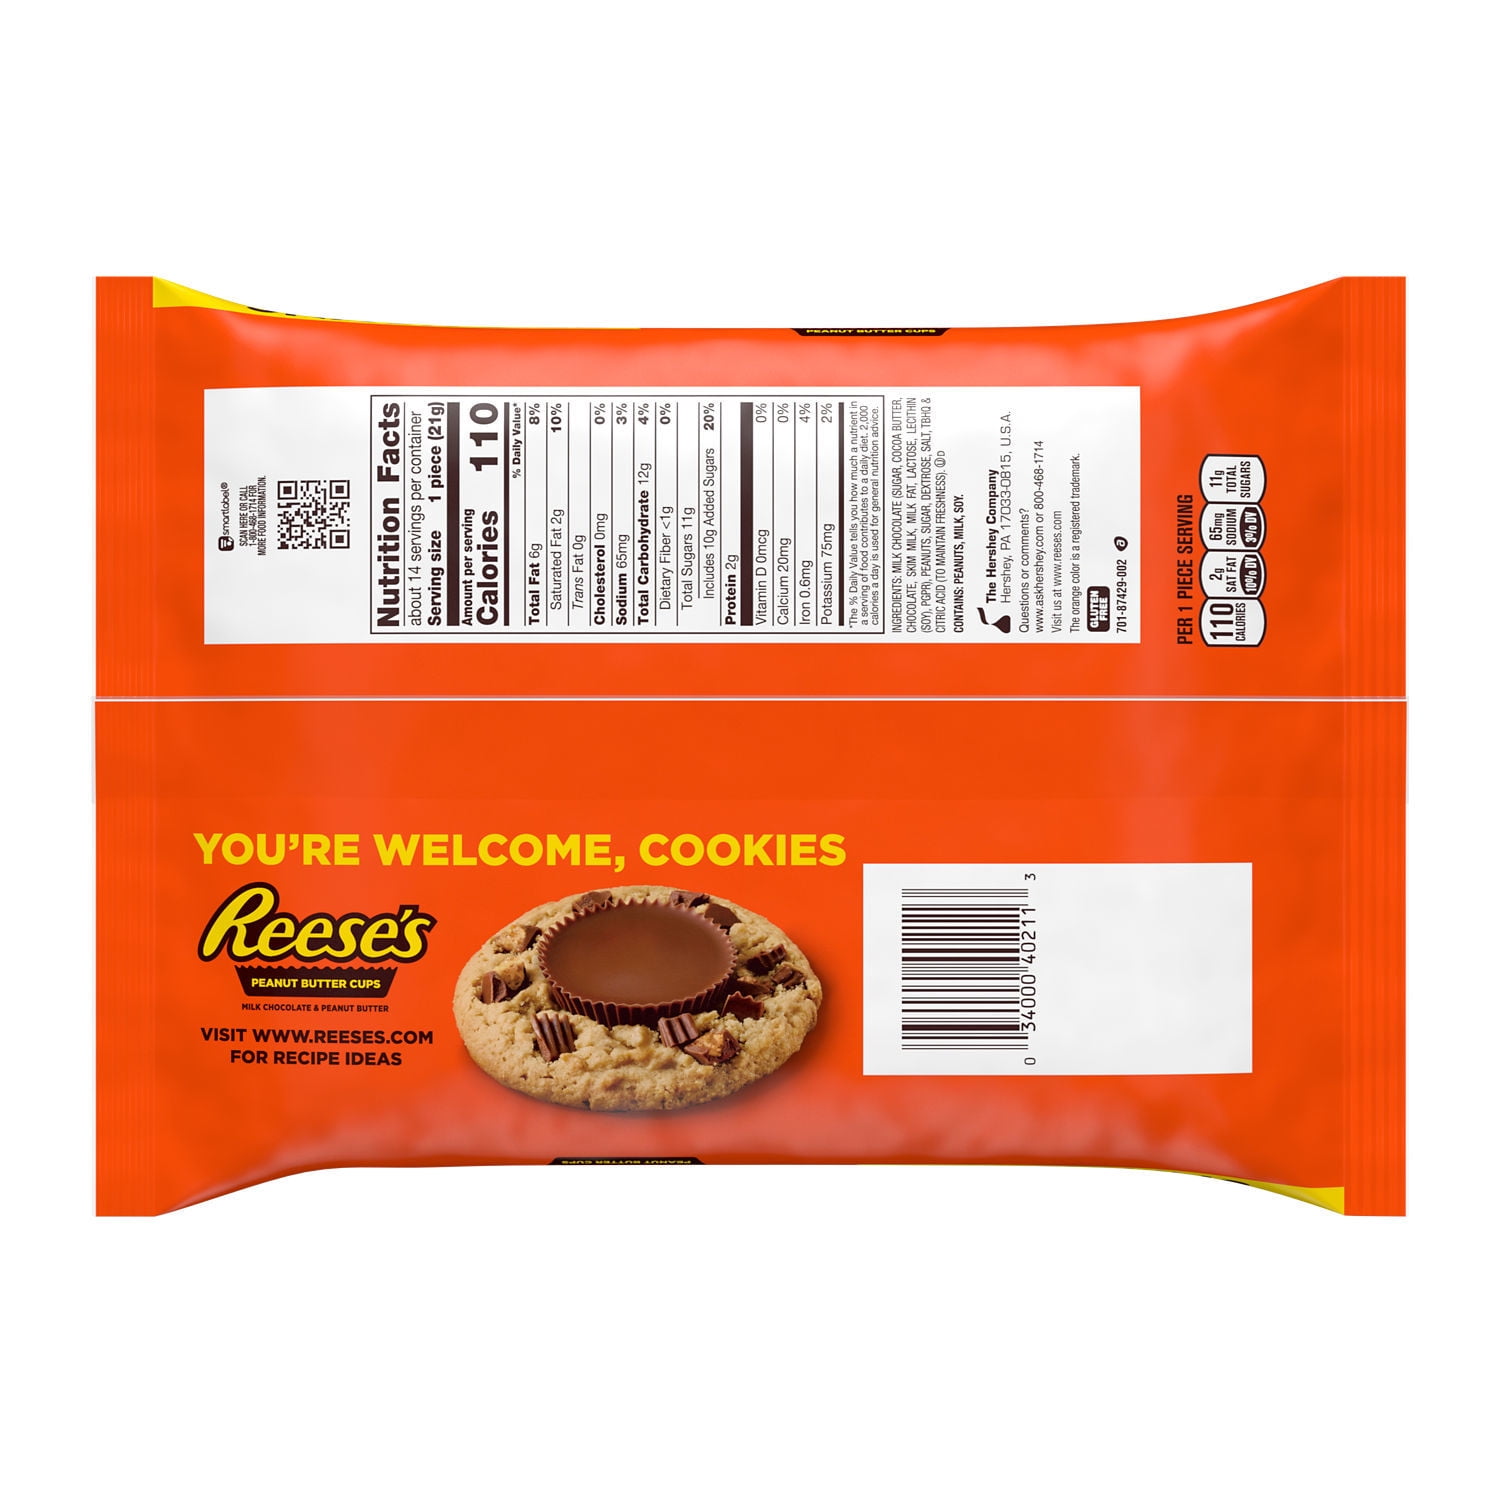 Milk Chocolate Peanut Butter Cups - 5.9-Oz. Bag